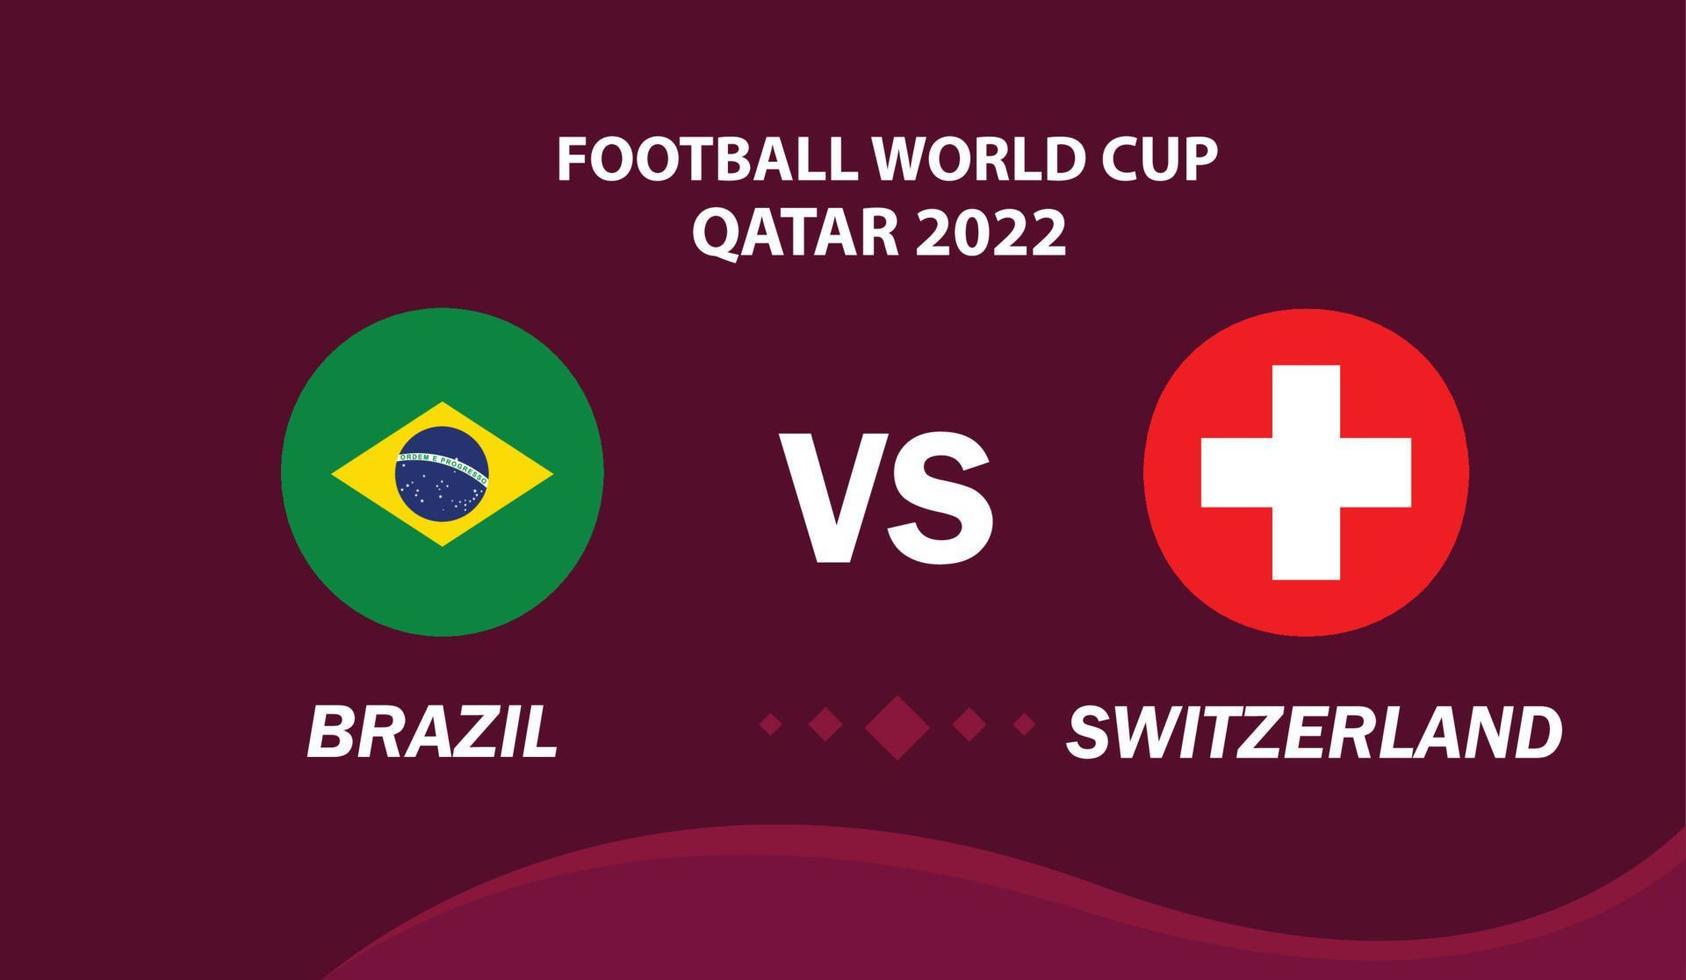 Brazilië vs Zwitserland, Amerikaans voetbal 2022, groep g. wereld Amerikaans voetbal wedstrijd kampioenschap bij elkaar passen versus teams intro sport achtergrond vector